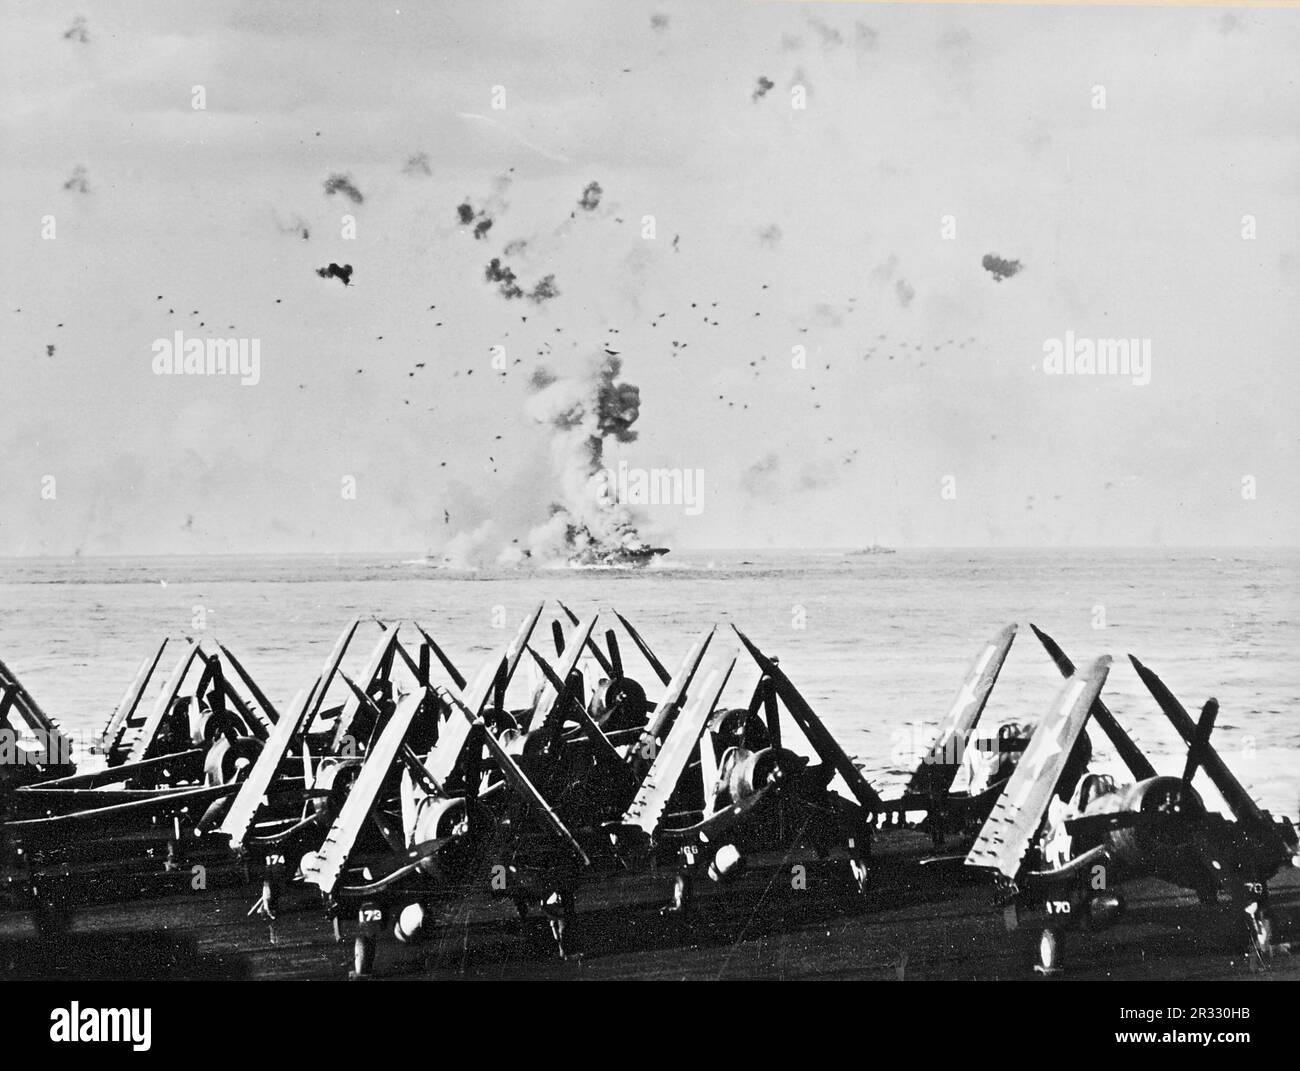 Estados Unidos El portaaviones de la Armada USS Enterprise (CV-6) en llamas después de que el barco fuera alcanzado por un kamikaze frente a Kyushu en el 14 de mayo de 1945. El elevador delantero, que pesa muchas toneladas, se puede ver arrojado por la explosión. La foto fue tomada de USS Essex (CV-9). Vought F4U-1 Corsarios del Escuadrón de Bombardeo de Combate 83 (VBF-83) son visibles en primer plano. Foto de stock